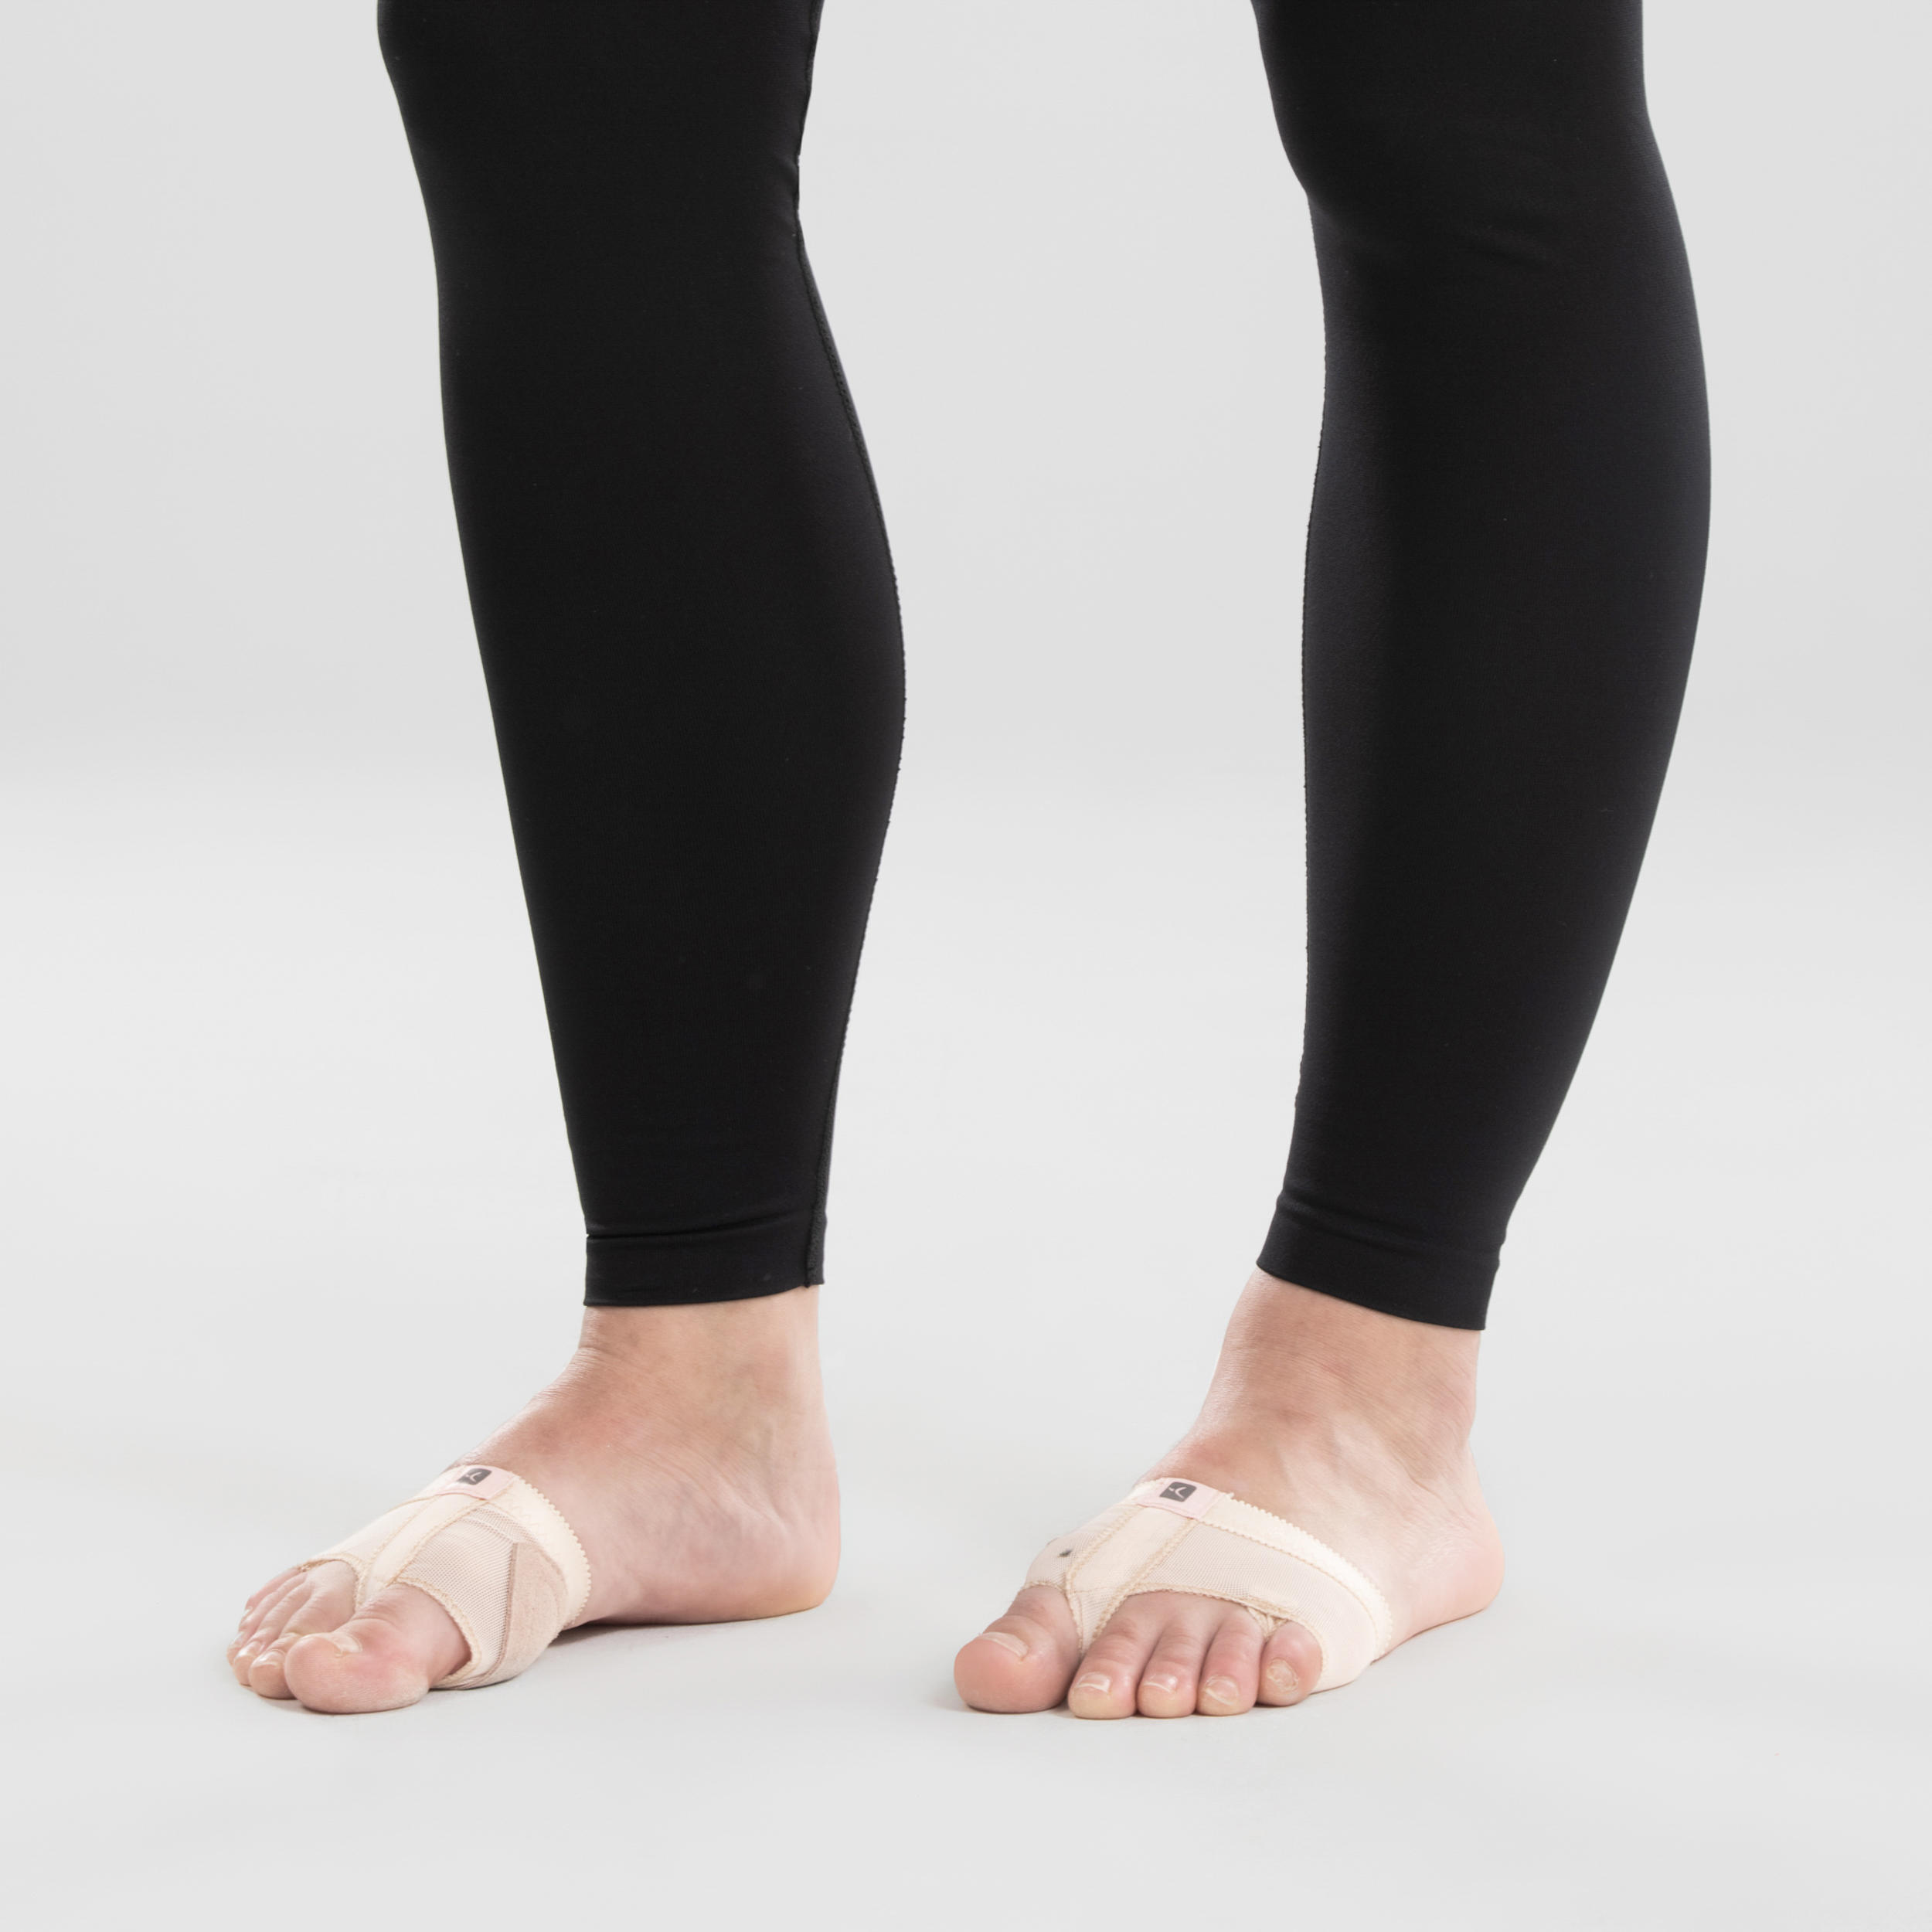 Women's Modern Dance Seamless Leggings - Black 5/9